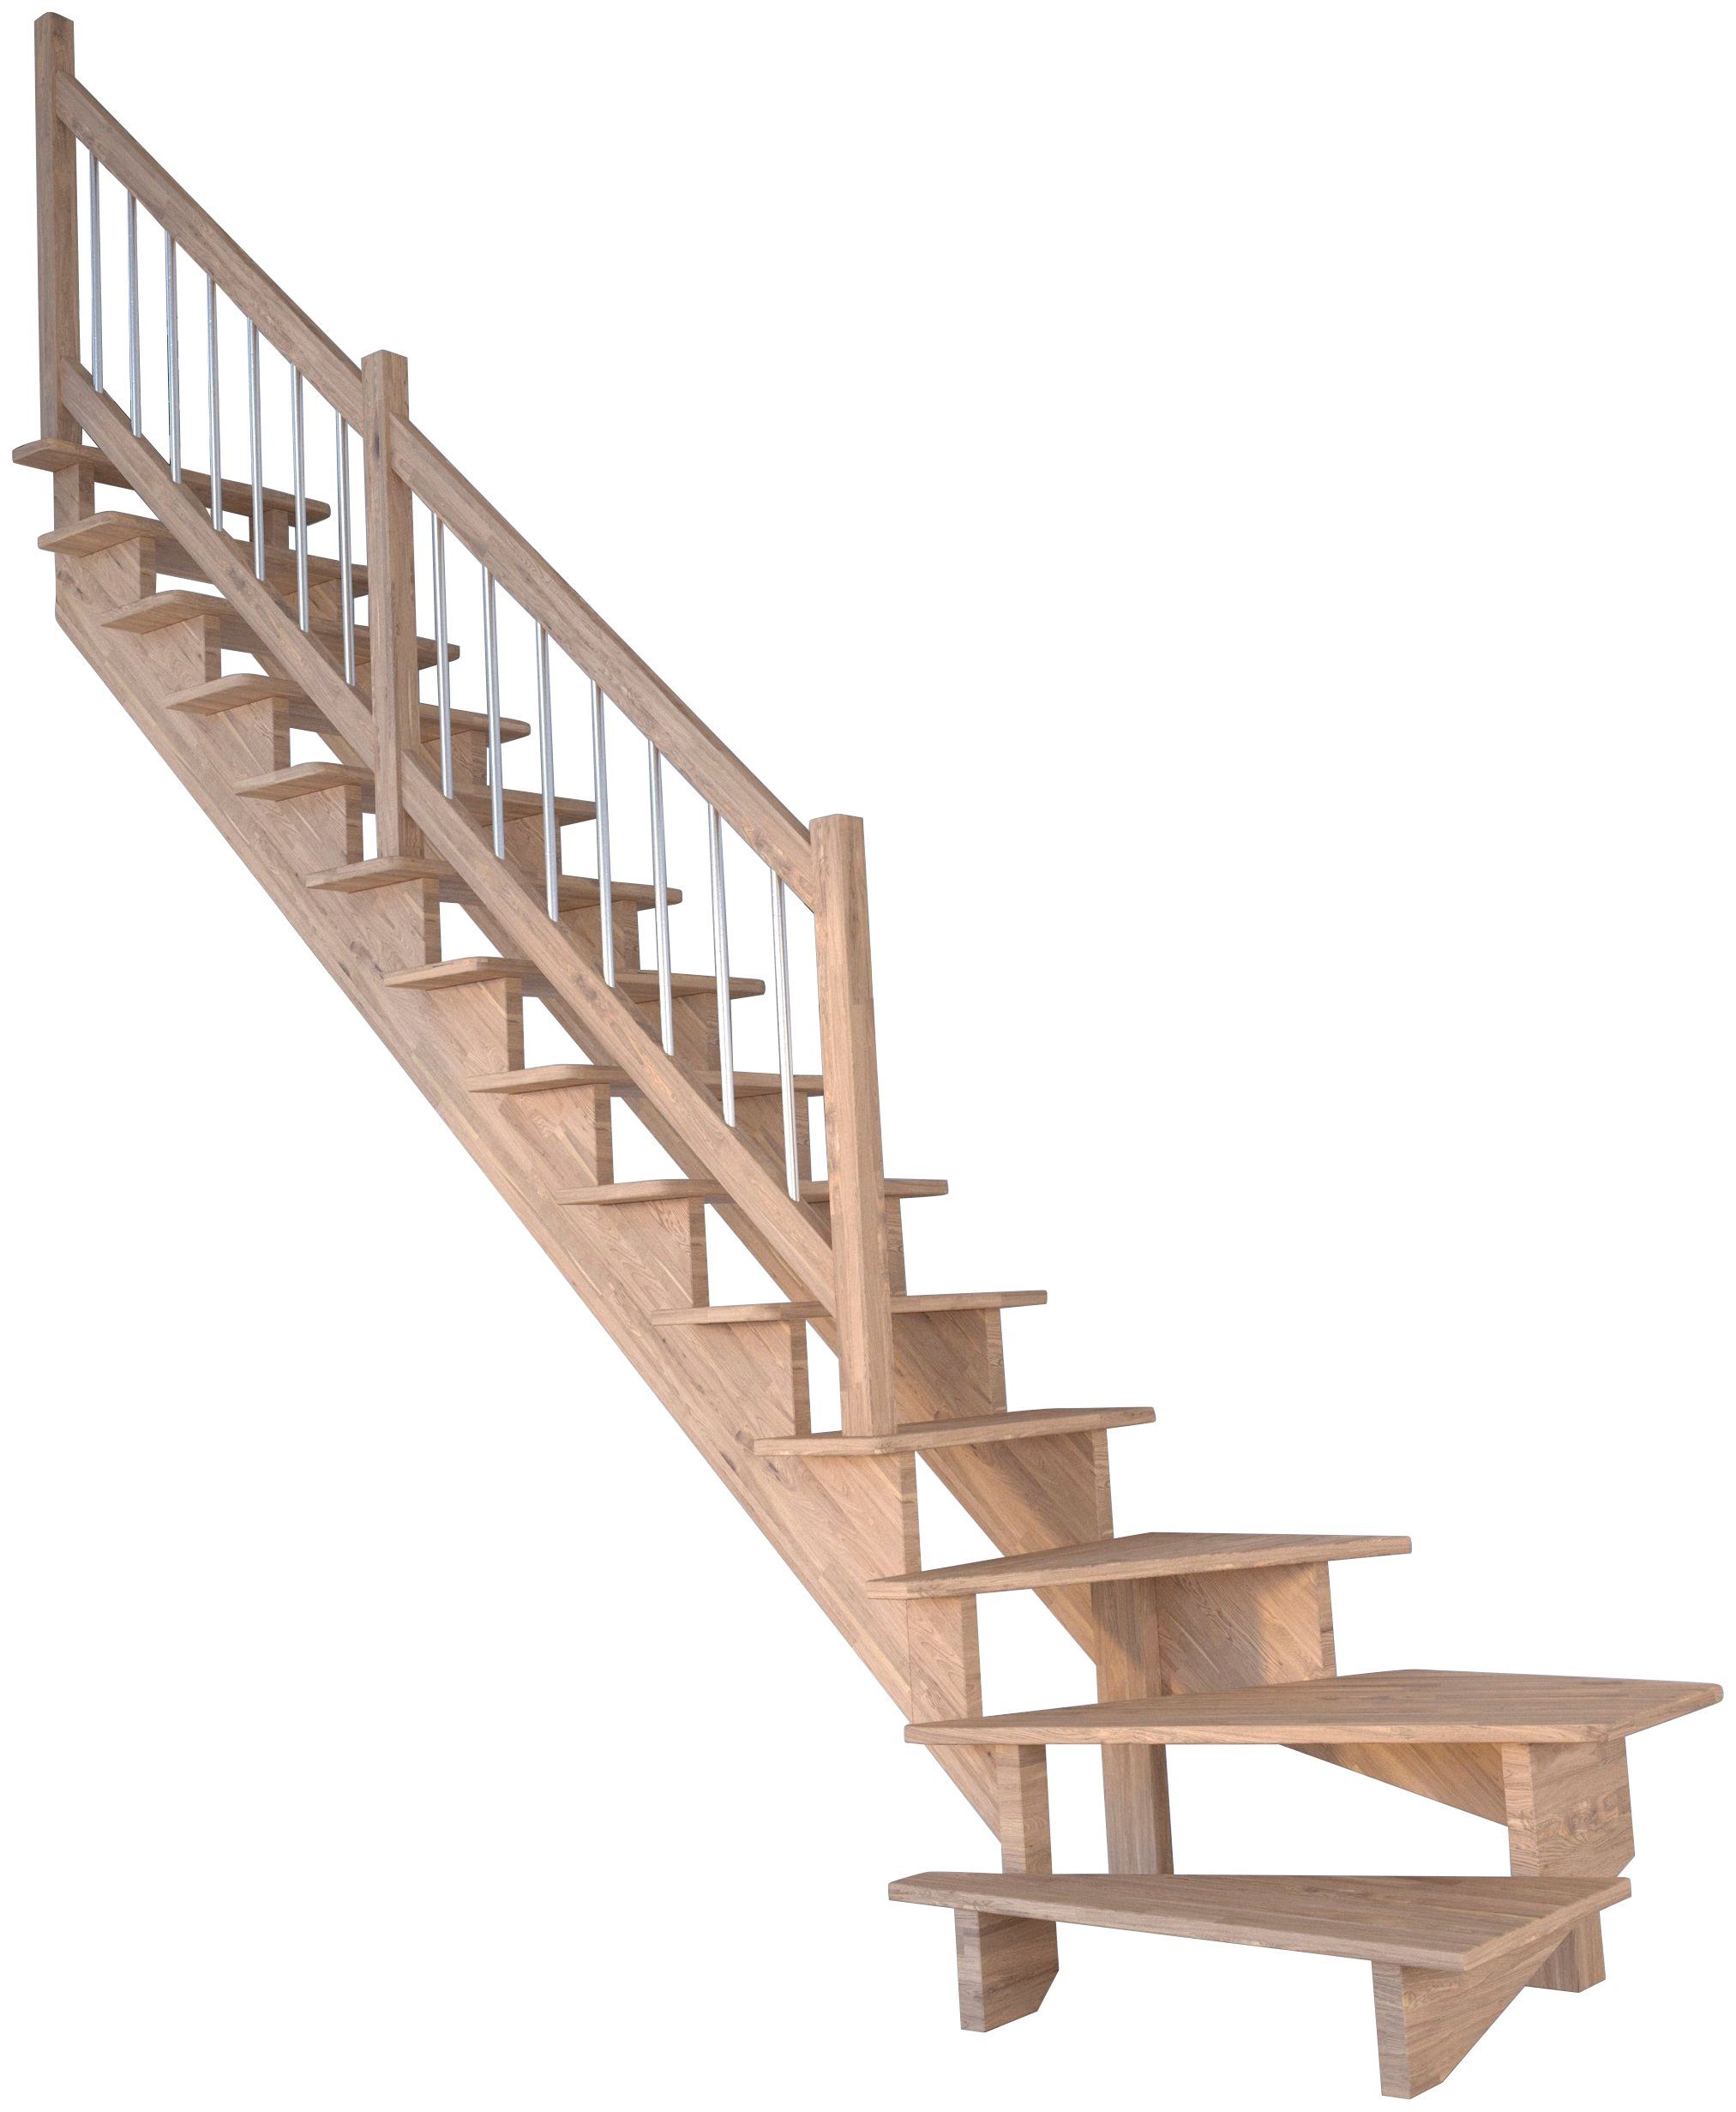 Starwood Systemtreppe Massivholz Lindos, Holz-Edelstahl, für Geschosshöhen bis 300 cm, Stufen offen, gewendelt Links, Durchgehende Wangenteile